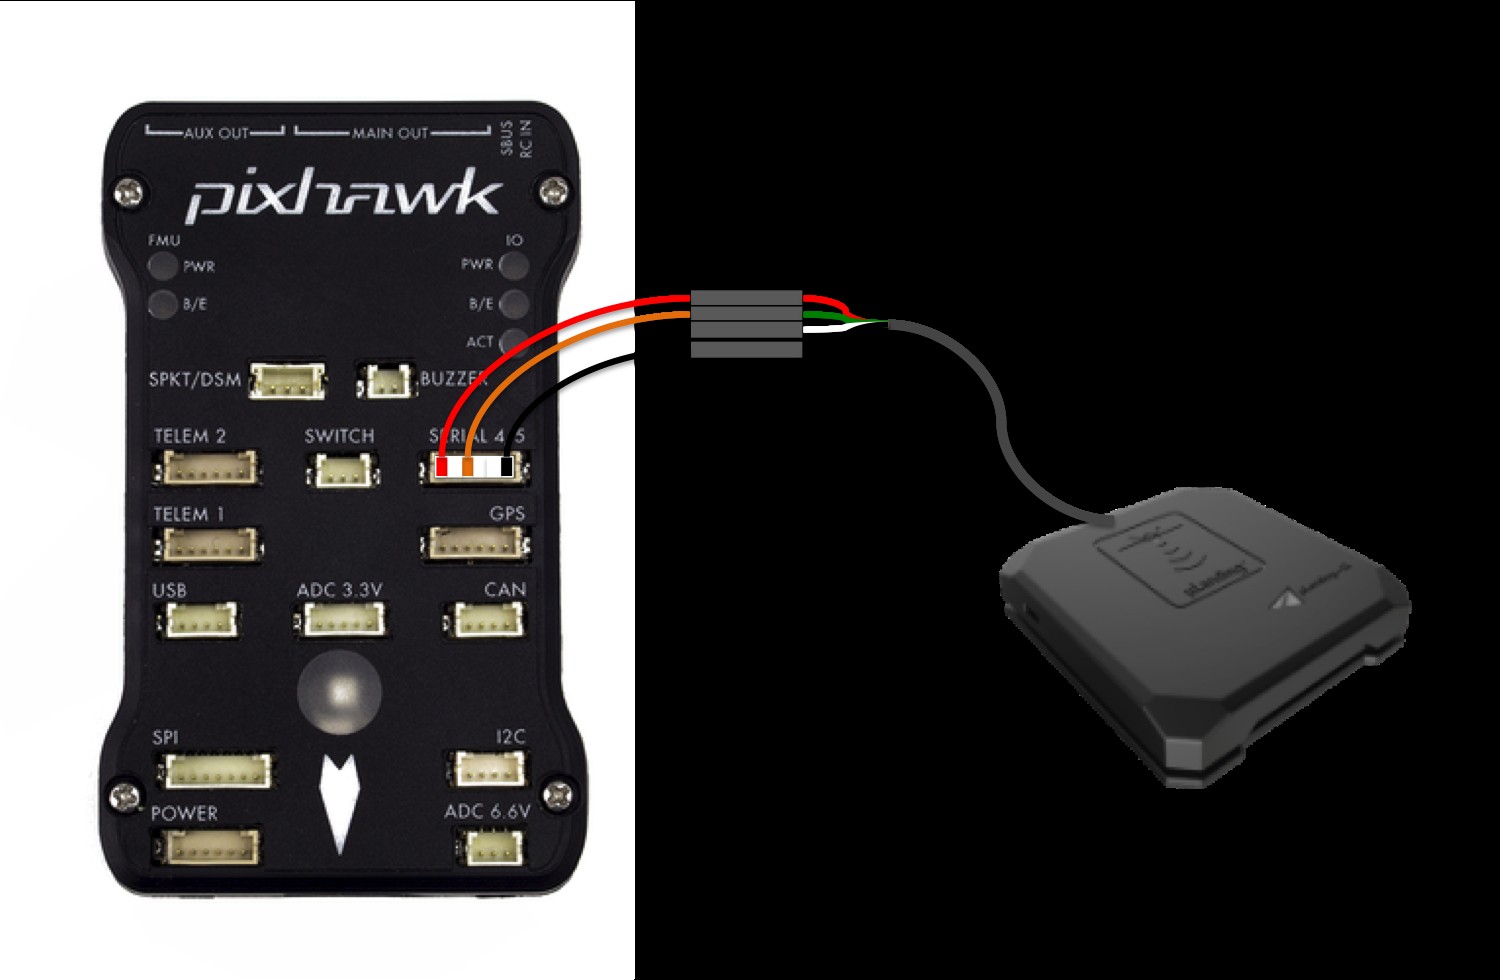 uLanding to Pixhawk wiring diagram